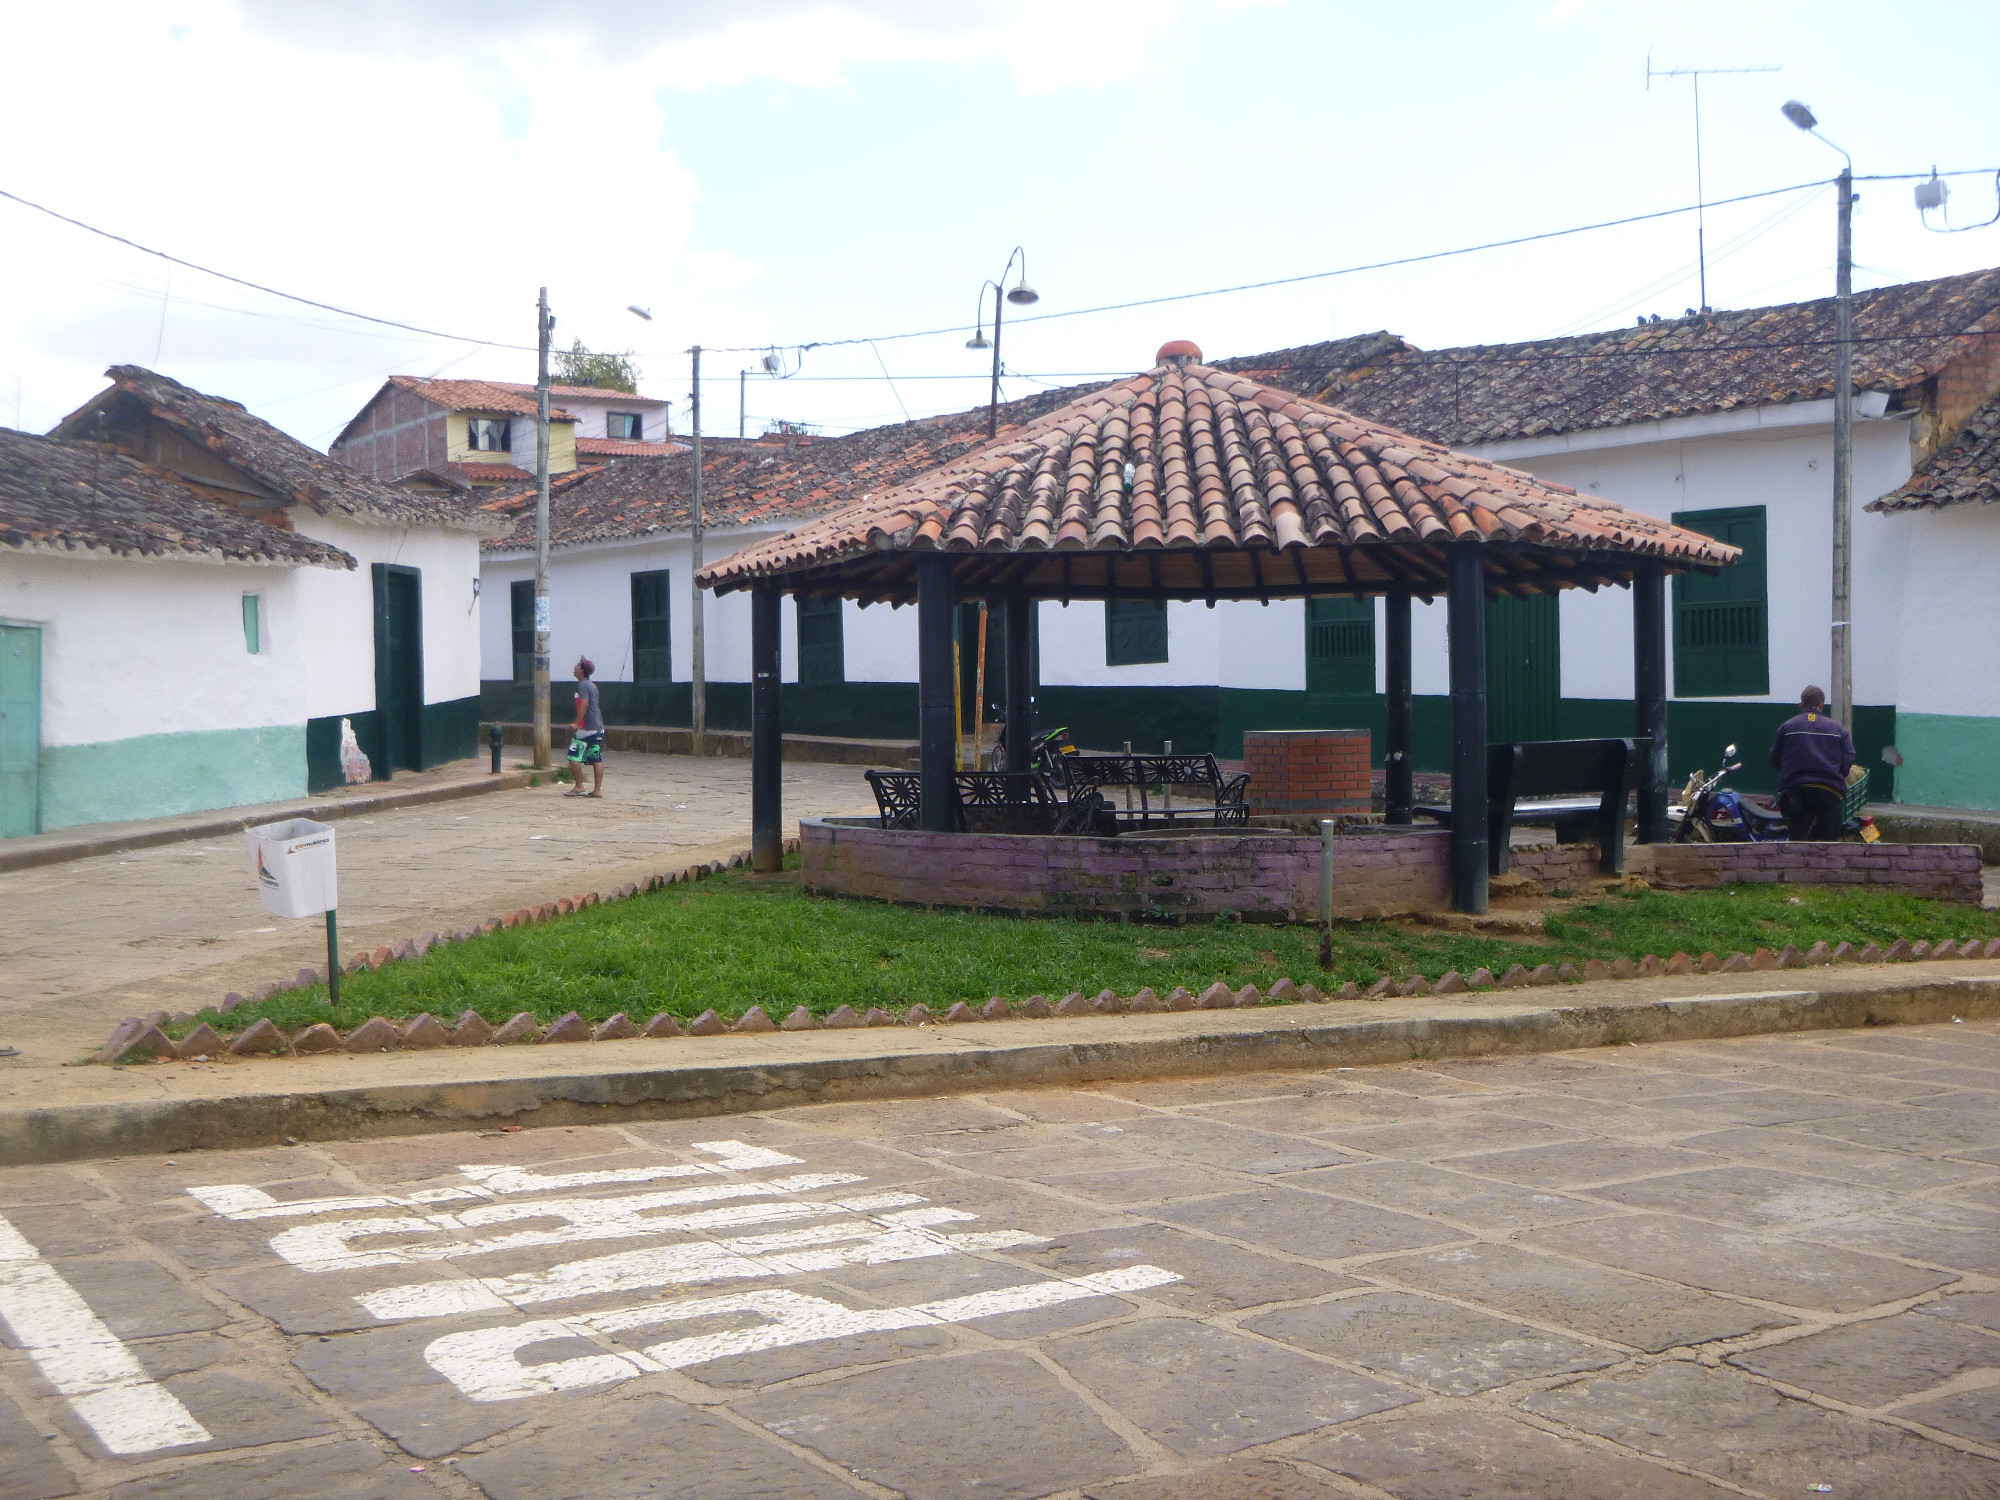 Curiti, Colombia